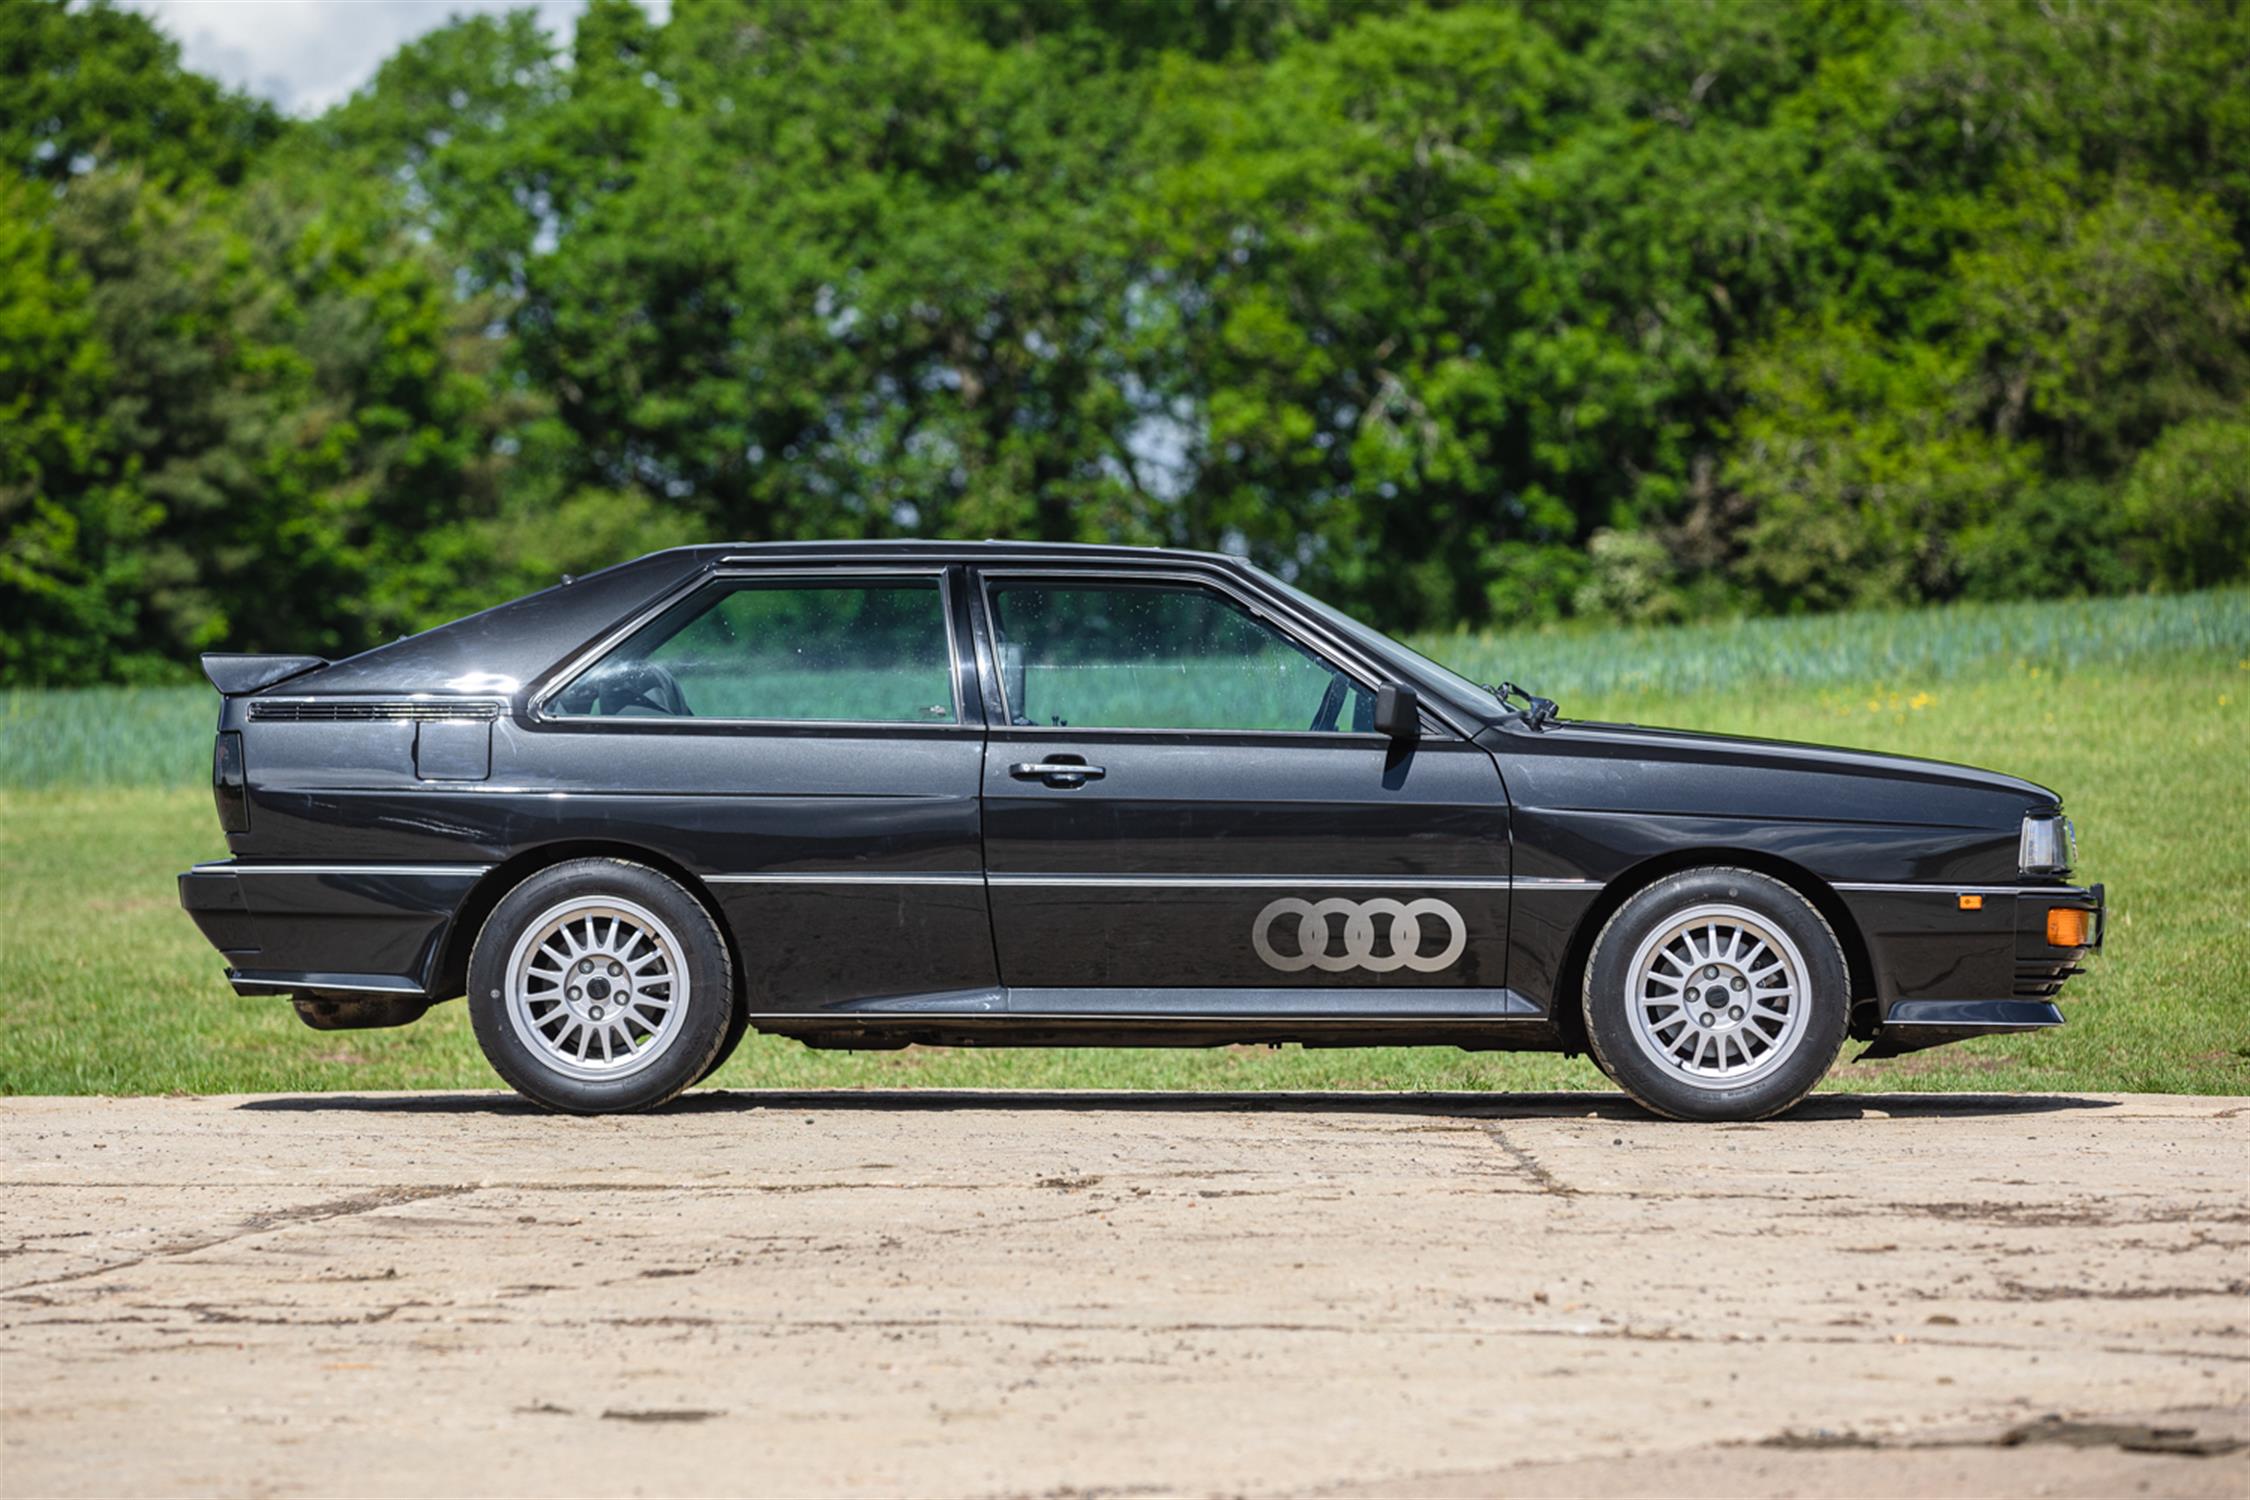 1990 Audi ur-Quattro 20v (RR) - Image 5 of 10